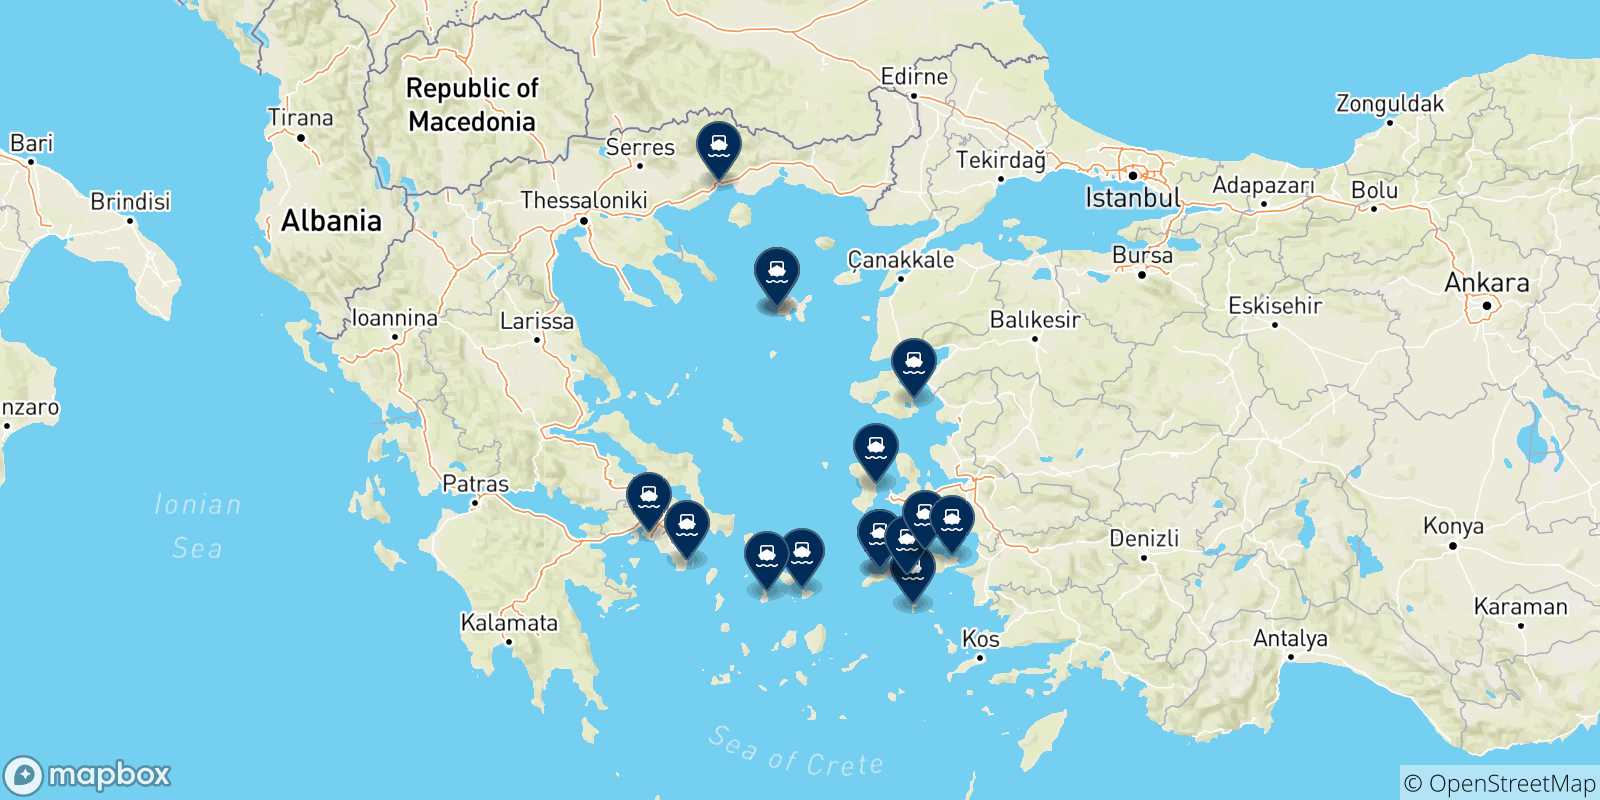 Mappa delle possibili rotte tra Mirina (Limnos) e la Grecia